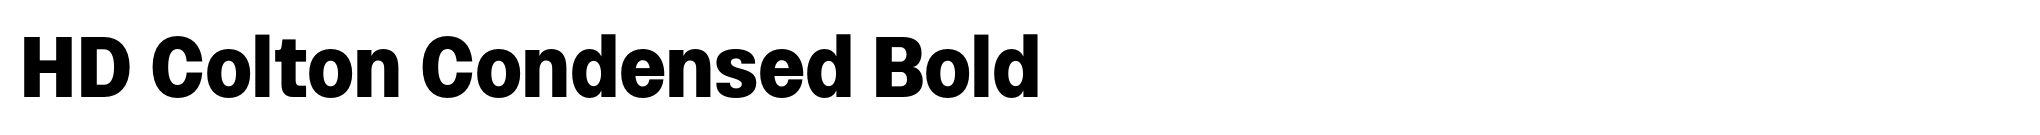 HD Colton Condensed Bold image